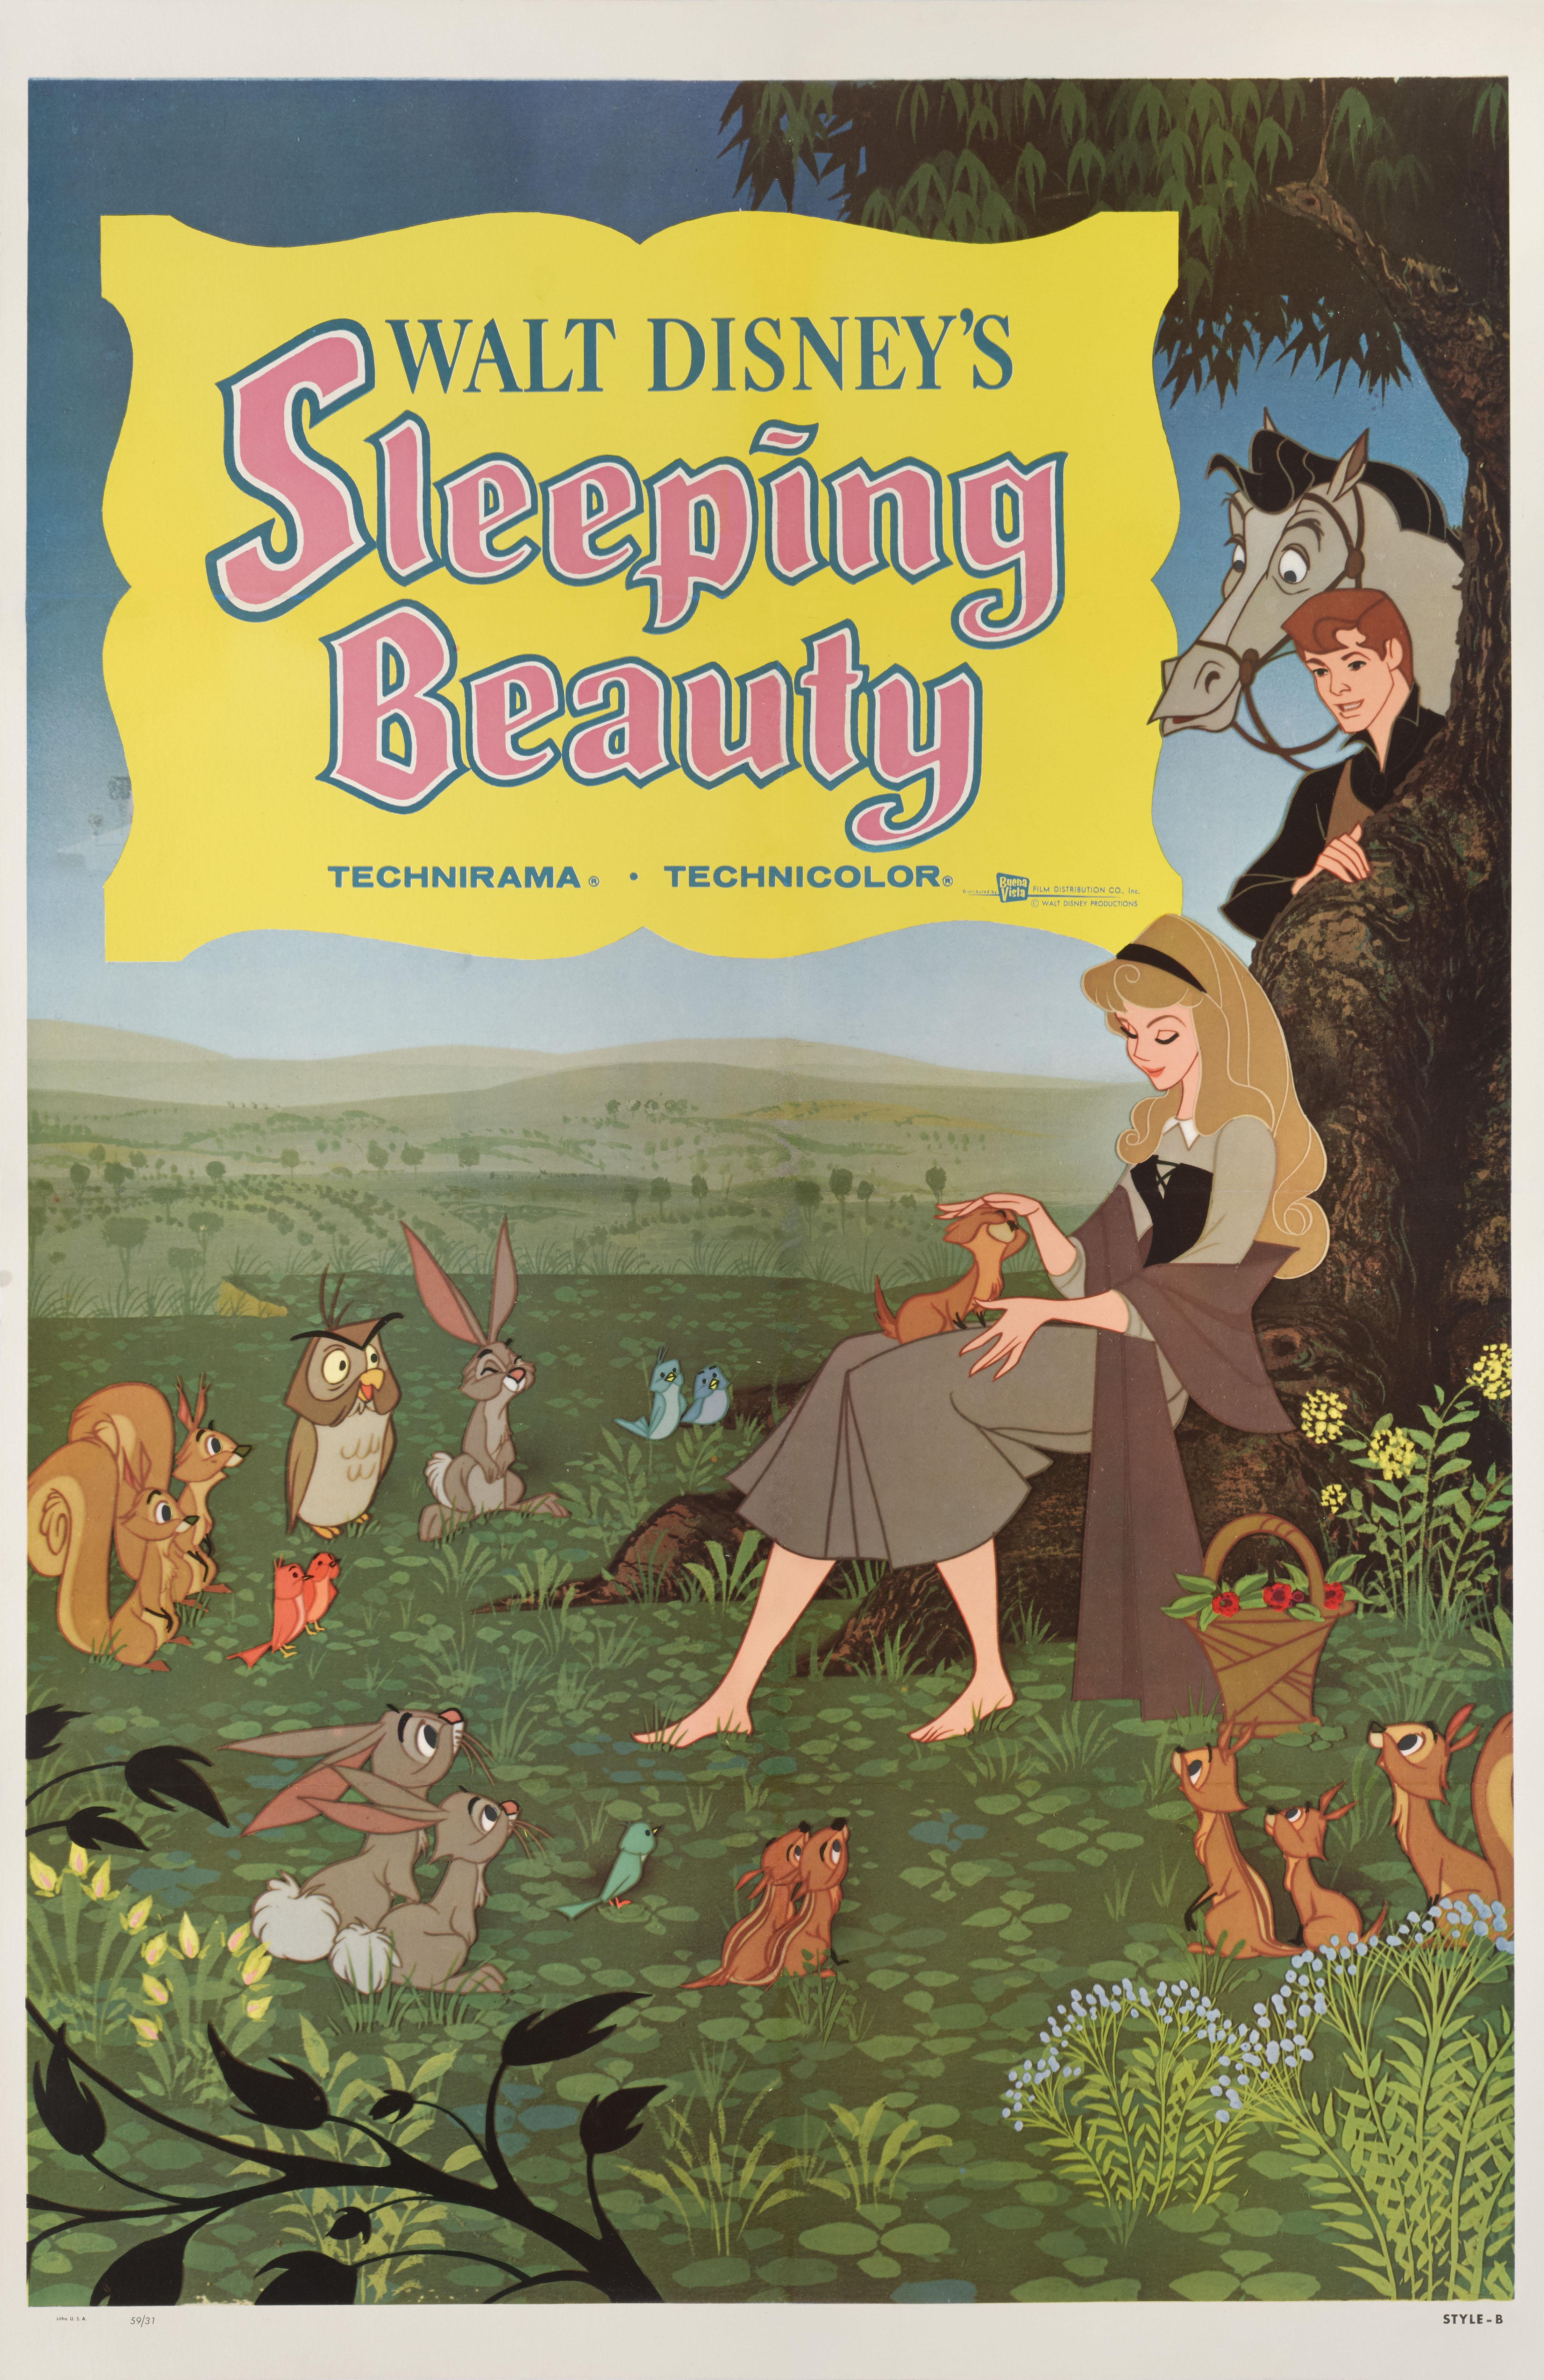 Affiche originale américaine pour le film d'animation La Belle au bois dormant de Walt Disney (1959). Il s'agit de l'affiche Style B.
L'affiche est doublée d'une toile de conservation et sera expédiée roulée dans un tube solide par Federal